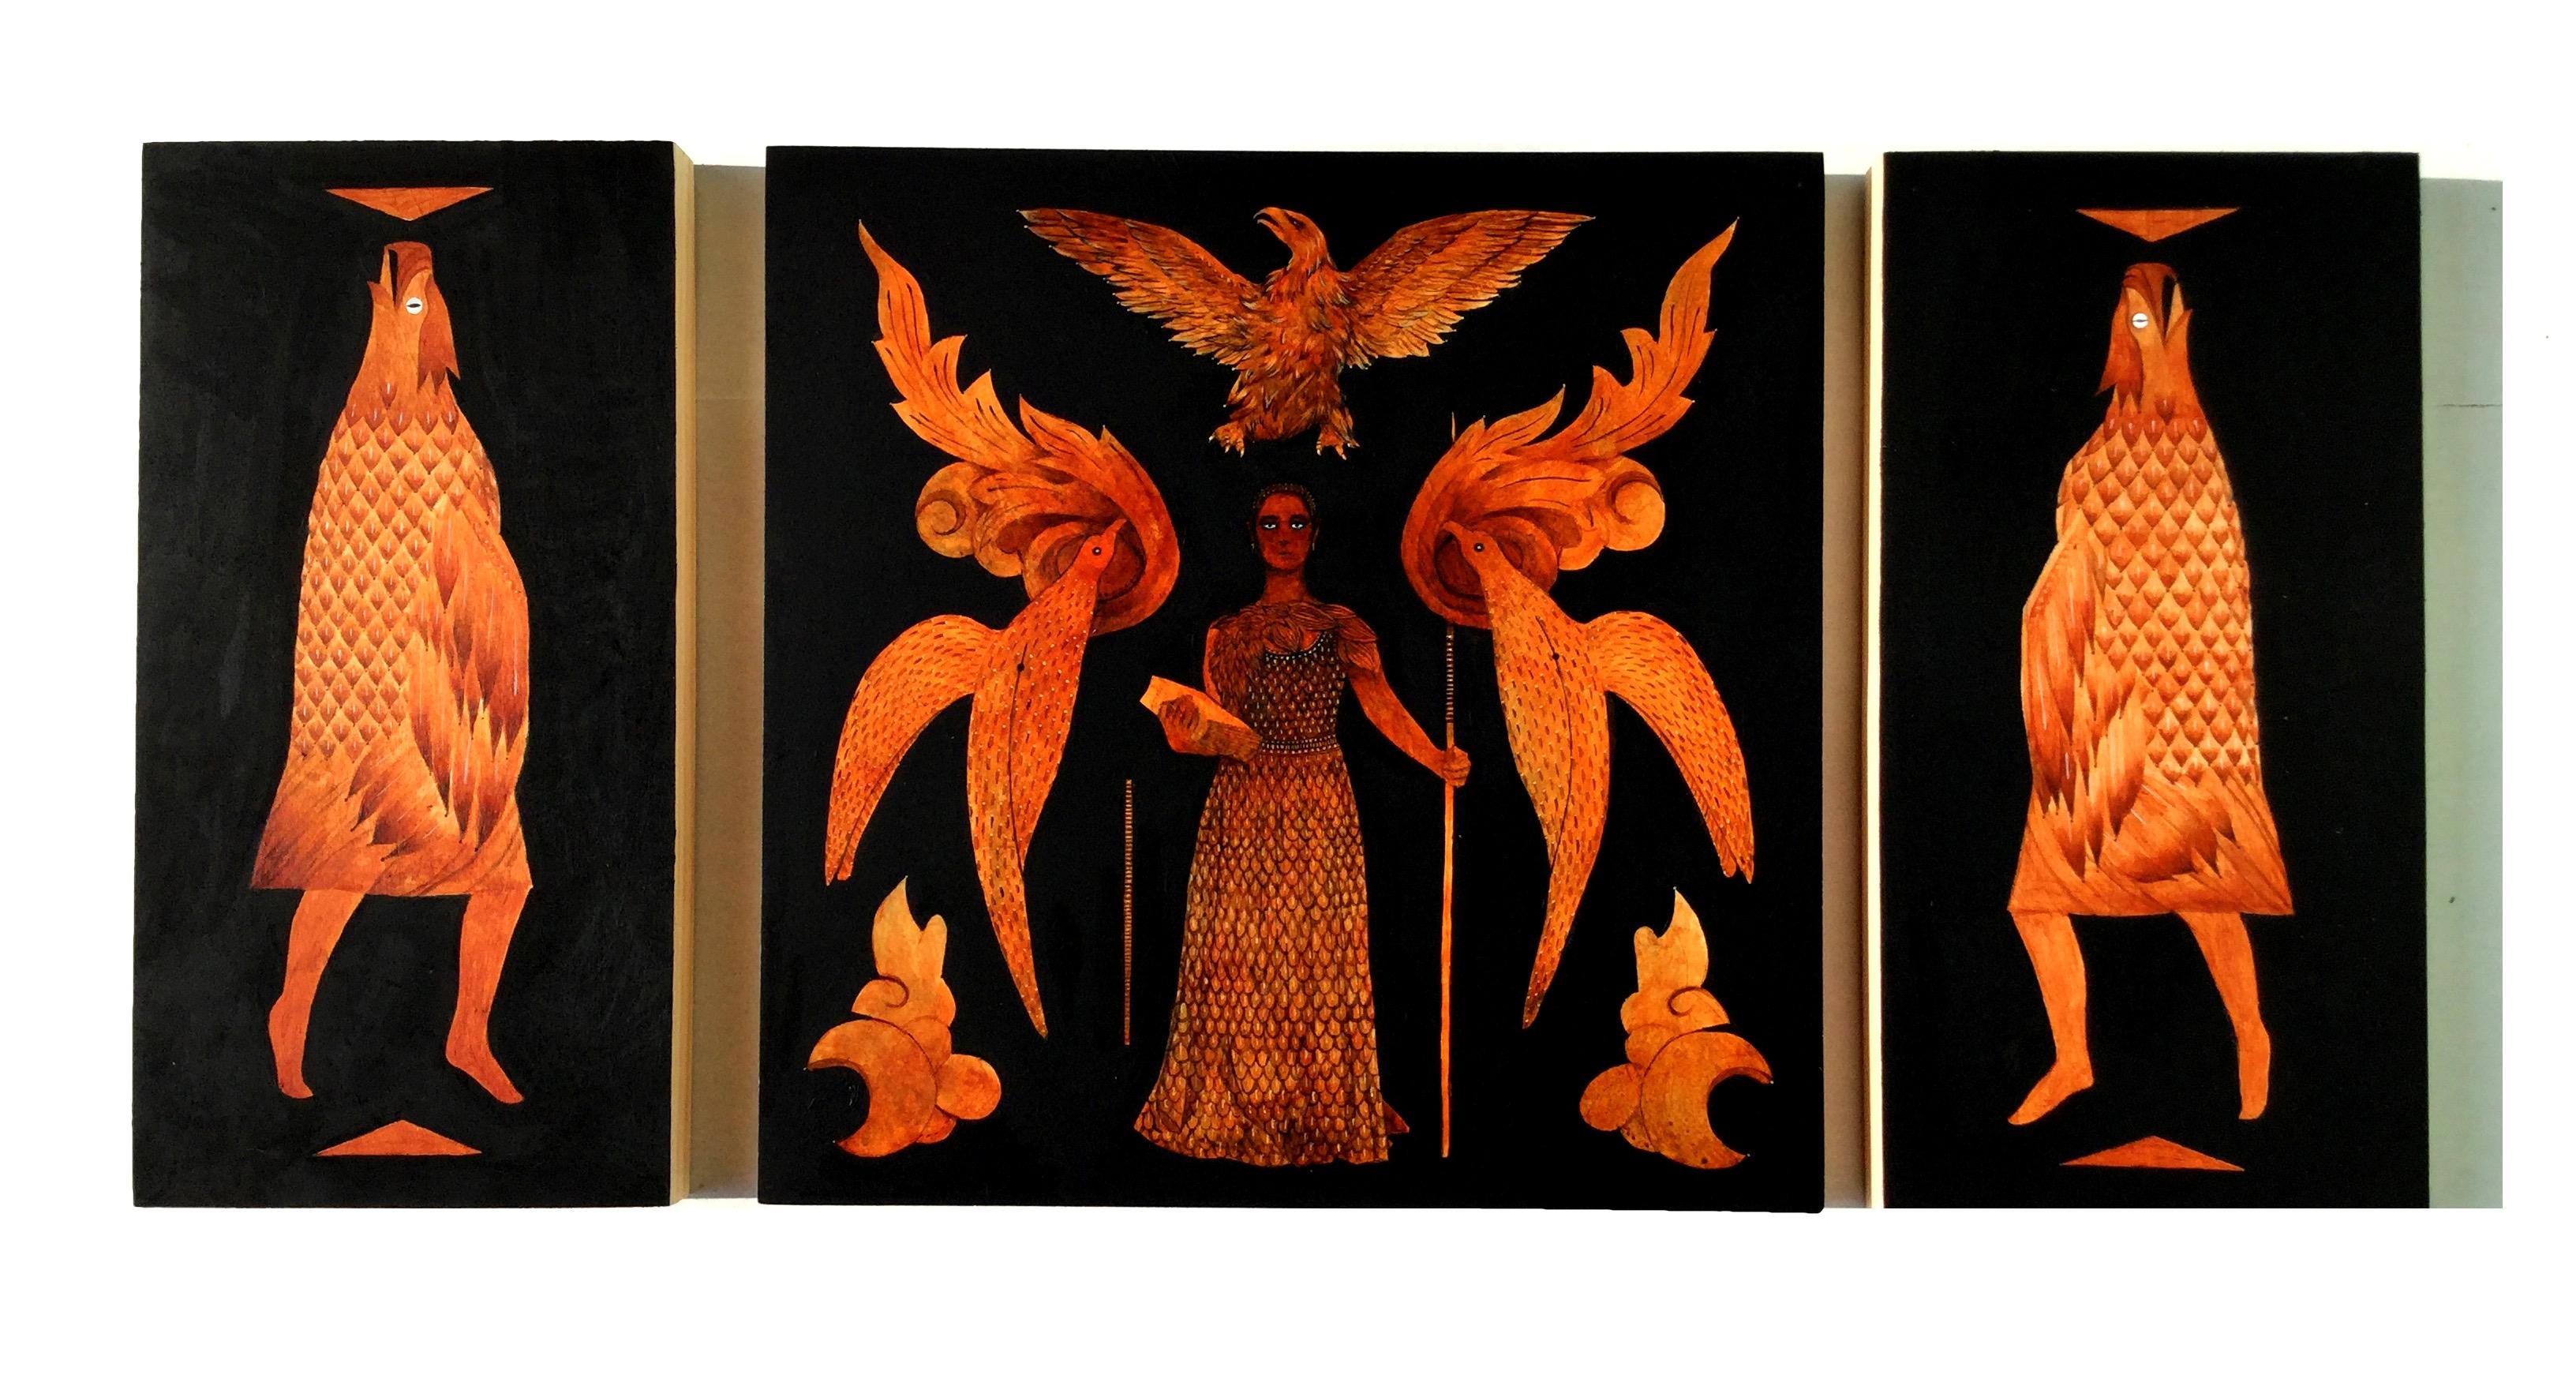 Tableau I (triptych)